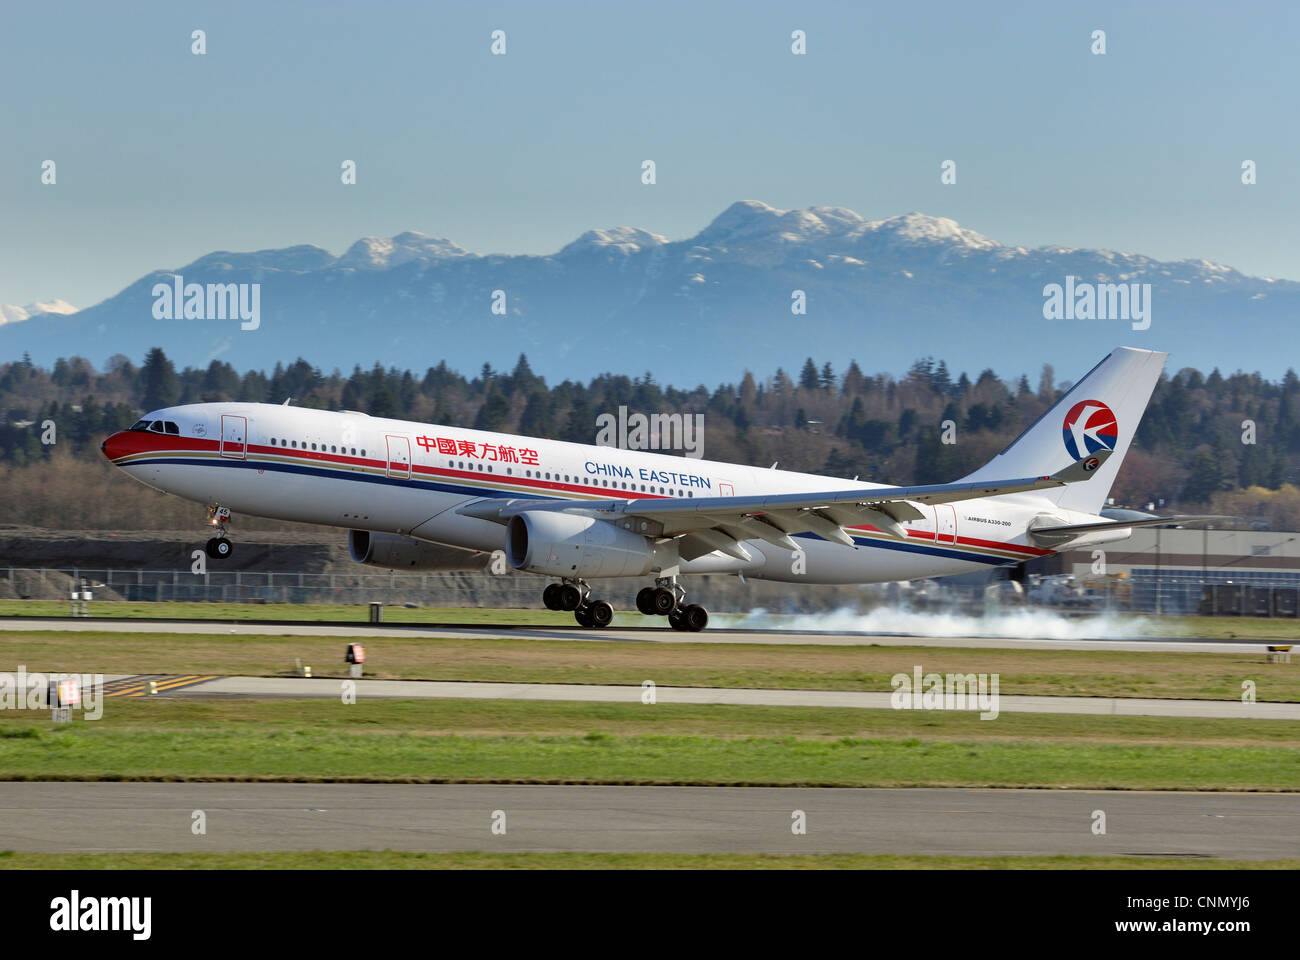 La Chine est de l'Airbus A330 (200), à l'atterrissage à l'Aéroport International de Vancouver. Banque D'Images